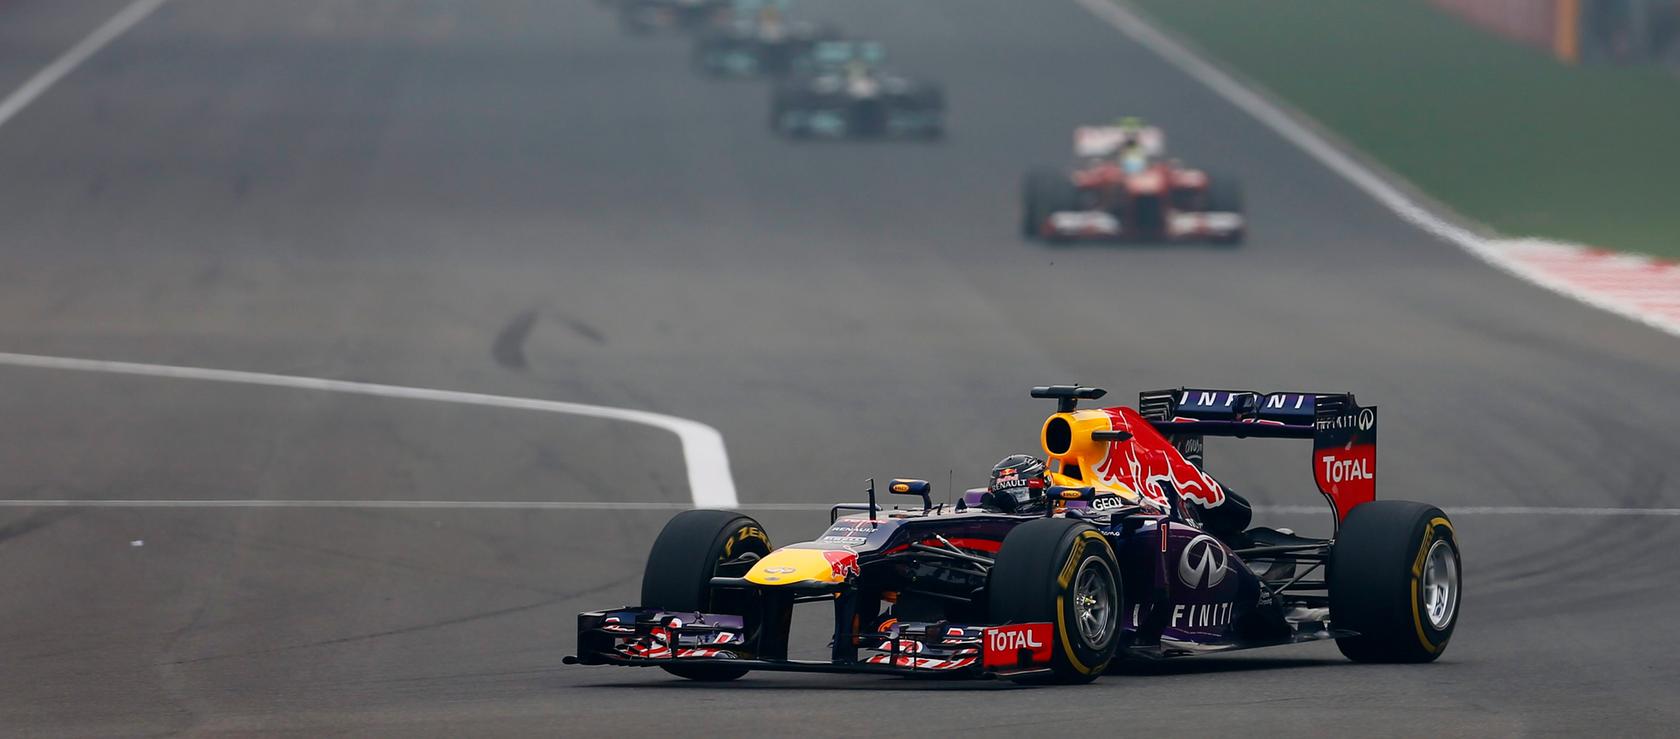 Sebastian Vettel ist zum vierten Mal in Folge Weltmeister der Formel 1.